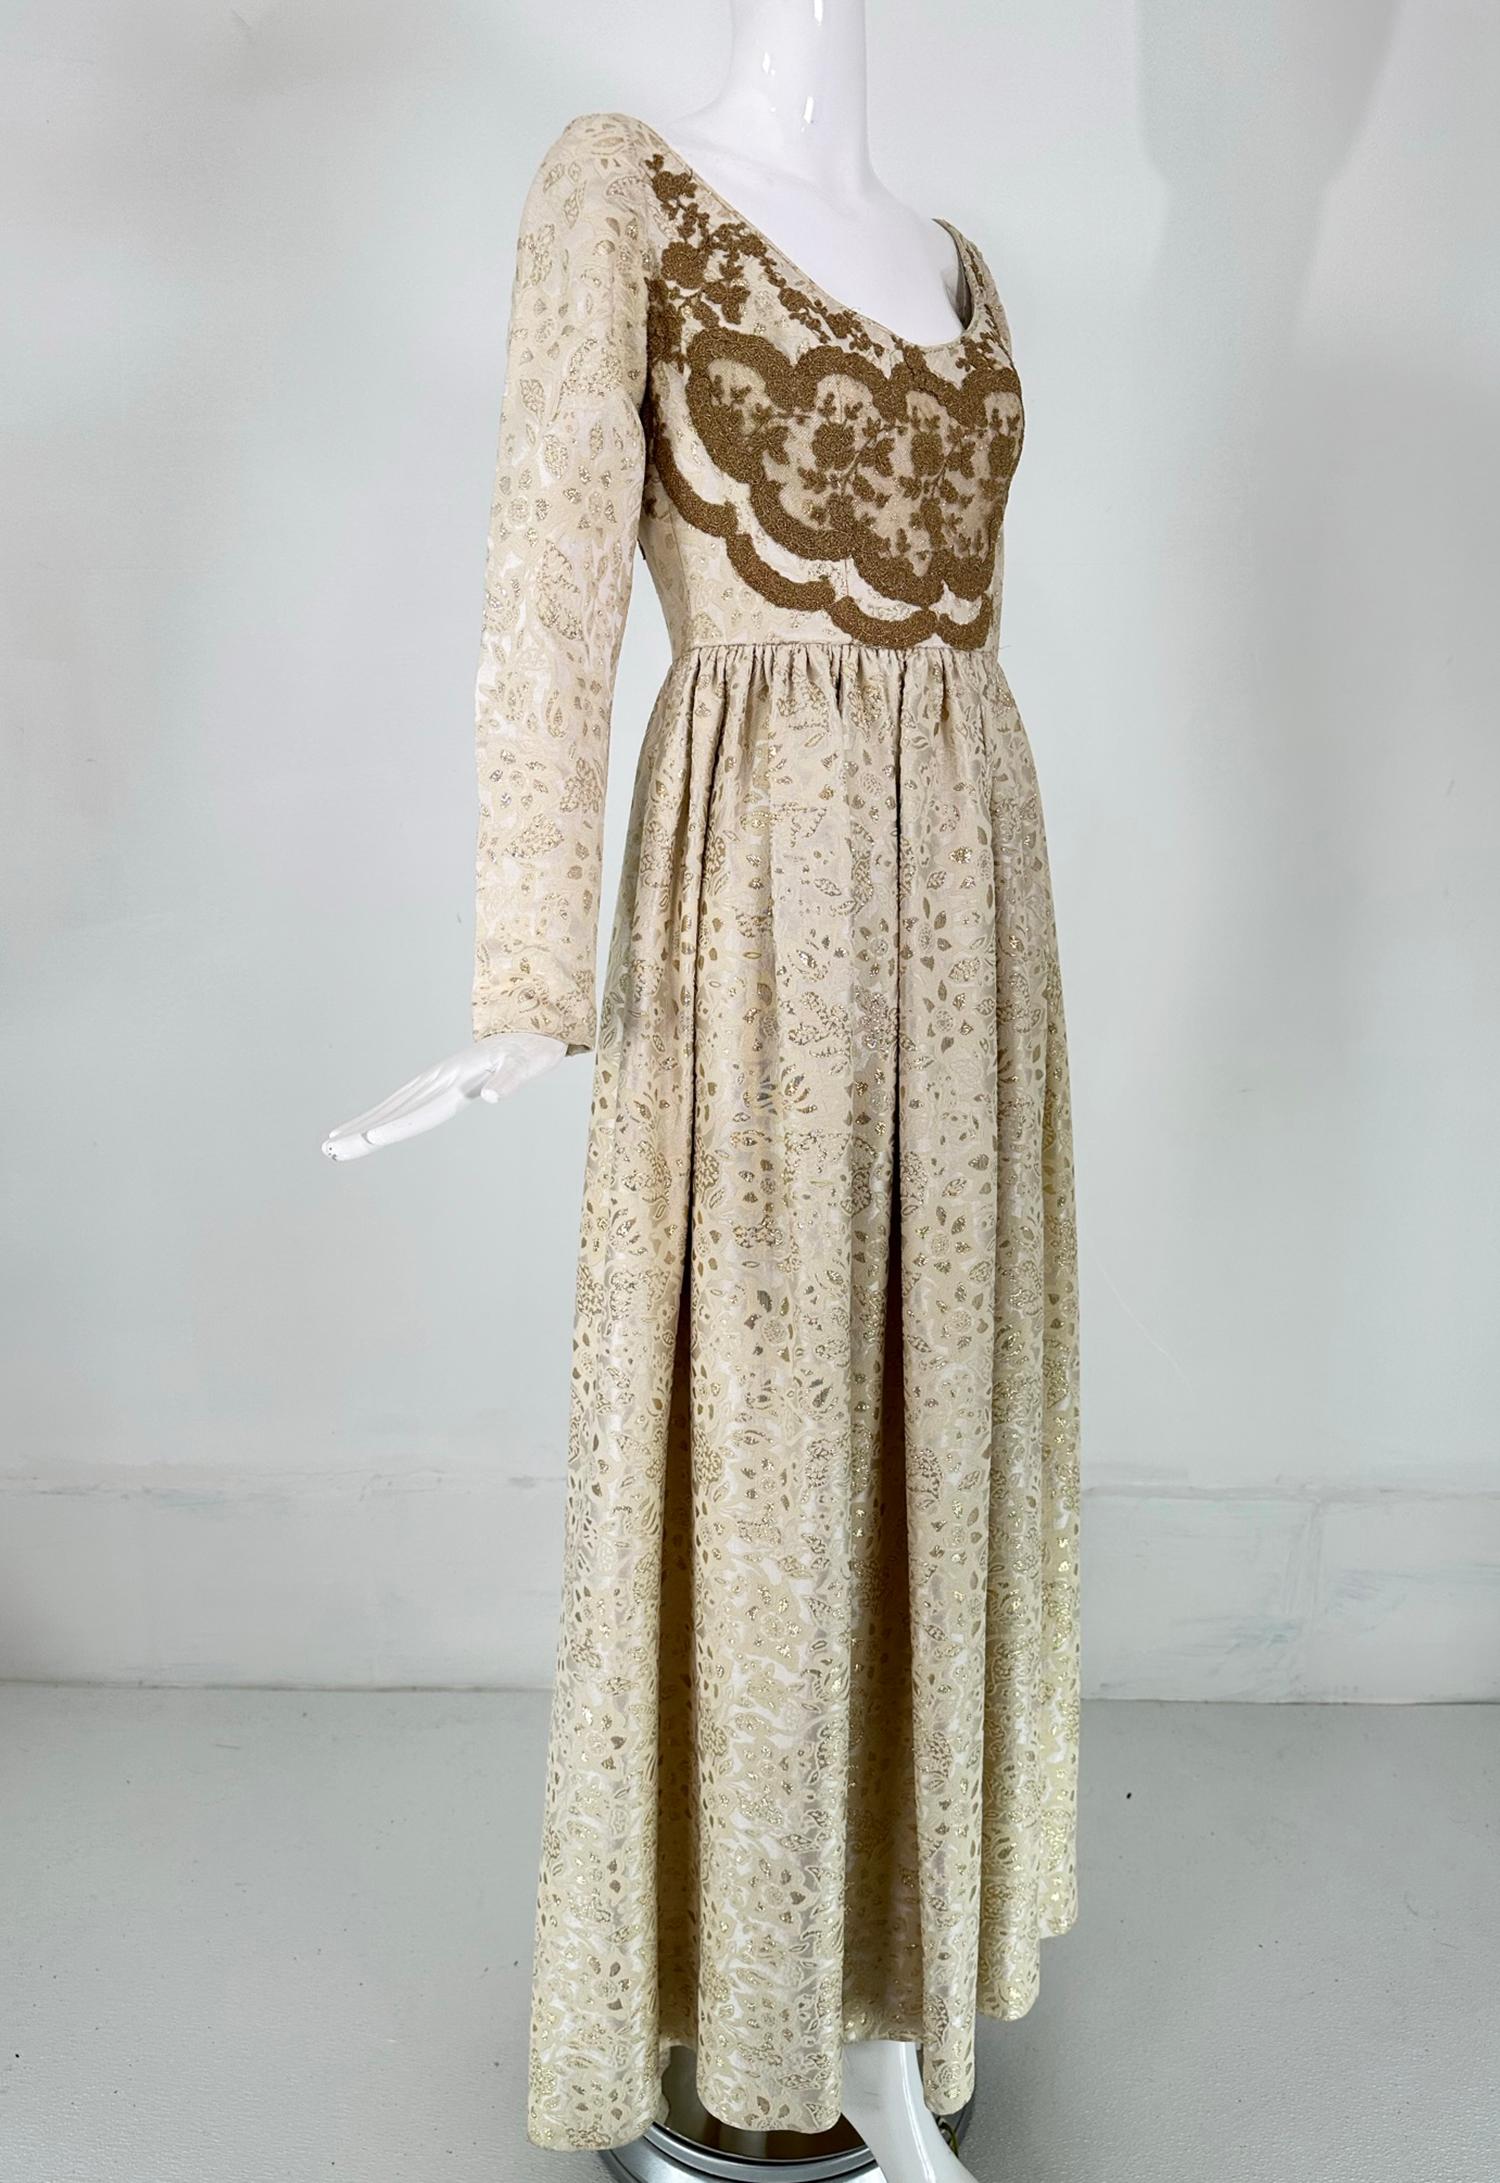 Irene Galitizne Couture, Abendkleid im Renaissancestil in Creme und Weiß mit goldenem Metallbrokat aus den 1970er Jahren. Ein romantisches Kleid mit wunderschönem Dekolleté und einer Miederapplikation auf der Vorderseite. Niedriger Halsausschnitt,